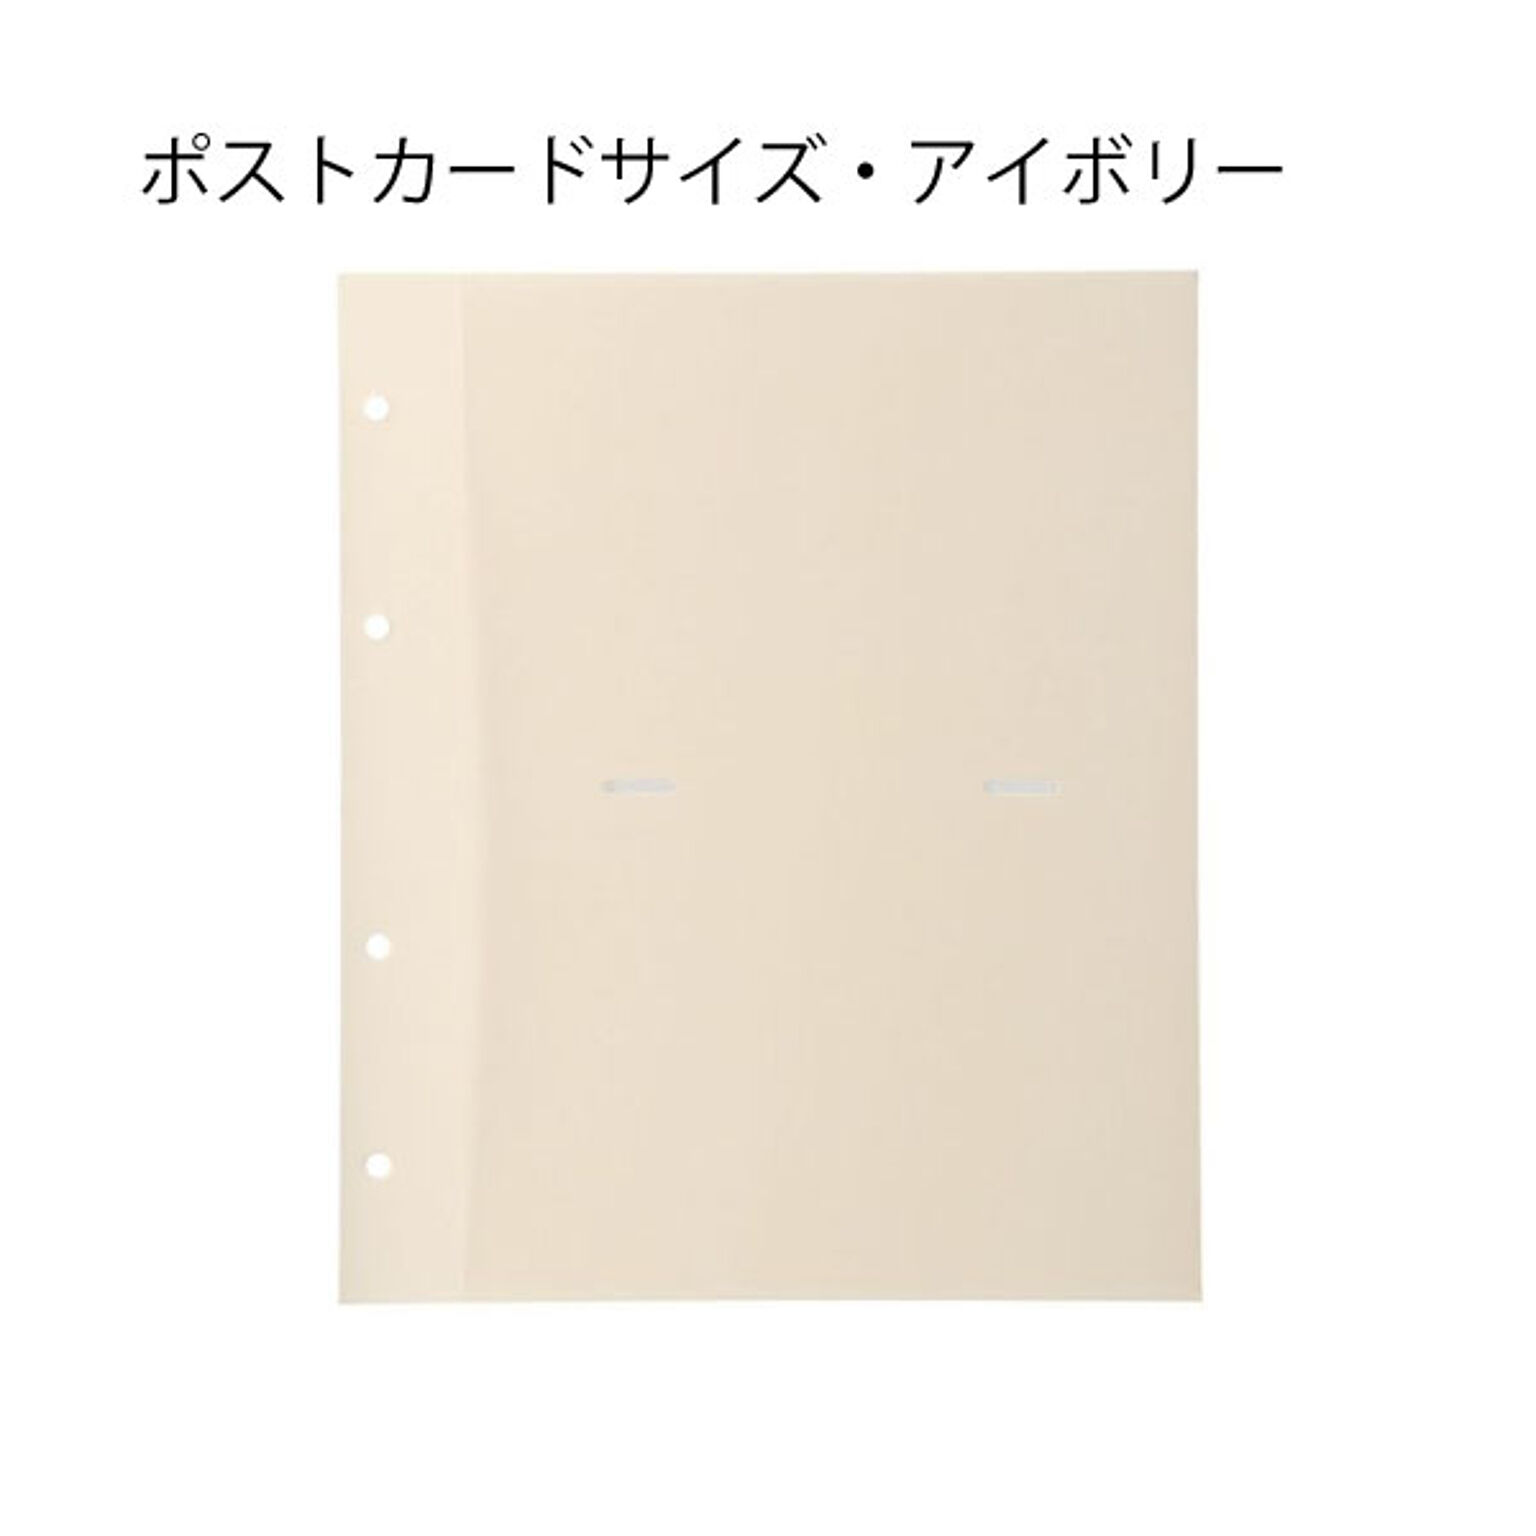 MARK'S フォトフレームアルバム・バインダー式 ポケットリフィル ポストカードサイズ・L判サイズ マークス 